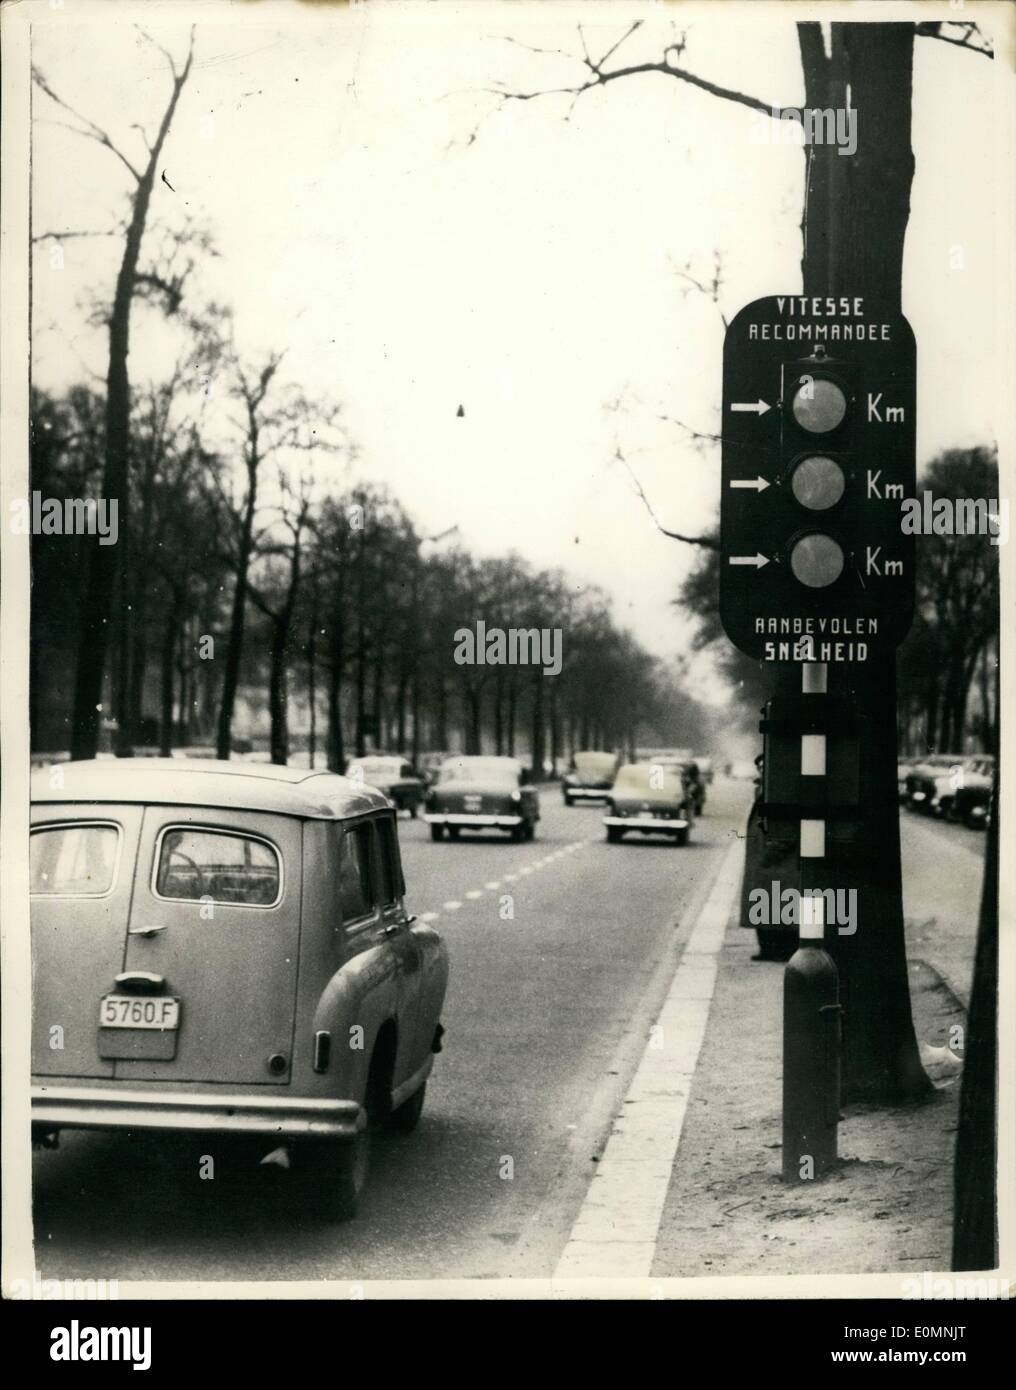 1. Januar 1956 - Roman '' halten den Verkehr Rollen '' Innovation In Brüssel... Pflegen diese Geschwindigkeit und Licht wird grün sein.!! Eine neuartige Innovation wurde auf der Straße zwischen Porte de Namur und Port Louise in Brüssel installiert... Eine Ampel zeigt drei verschiedene Geschwindigkeiten d.h. 35; 45 und 55 km/h... Ich der Fahrer hält sein Auto reisen mit der Geschwindigkeit durch den Pfeil angezeigt findet er die nächste Ampel auf Grün - so hat er einen klaren Weg durch... Es ist zu hoffen, dass dieses Schema Verkehr an den Straßenkreuzungen Wabbel verhindert werden. Stockfoto